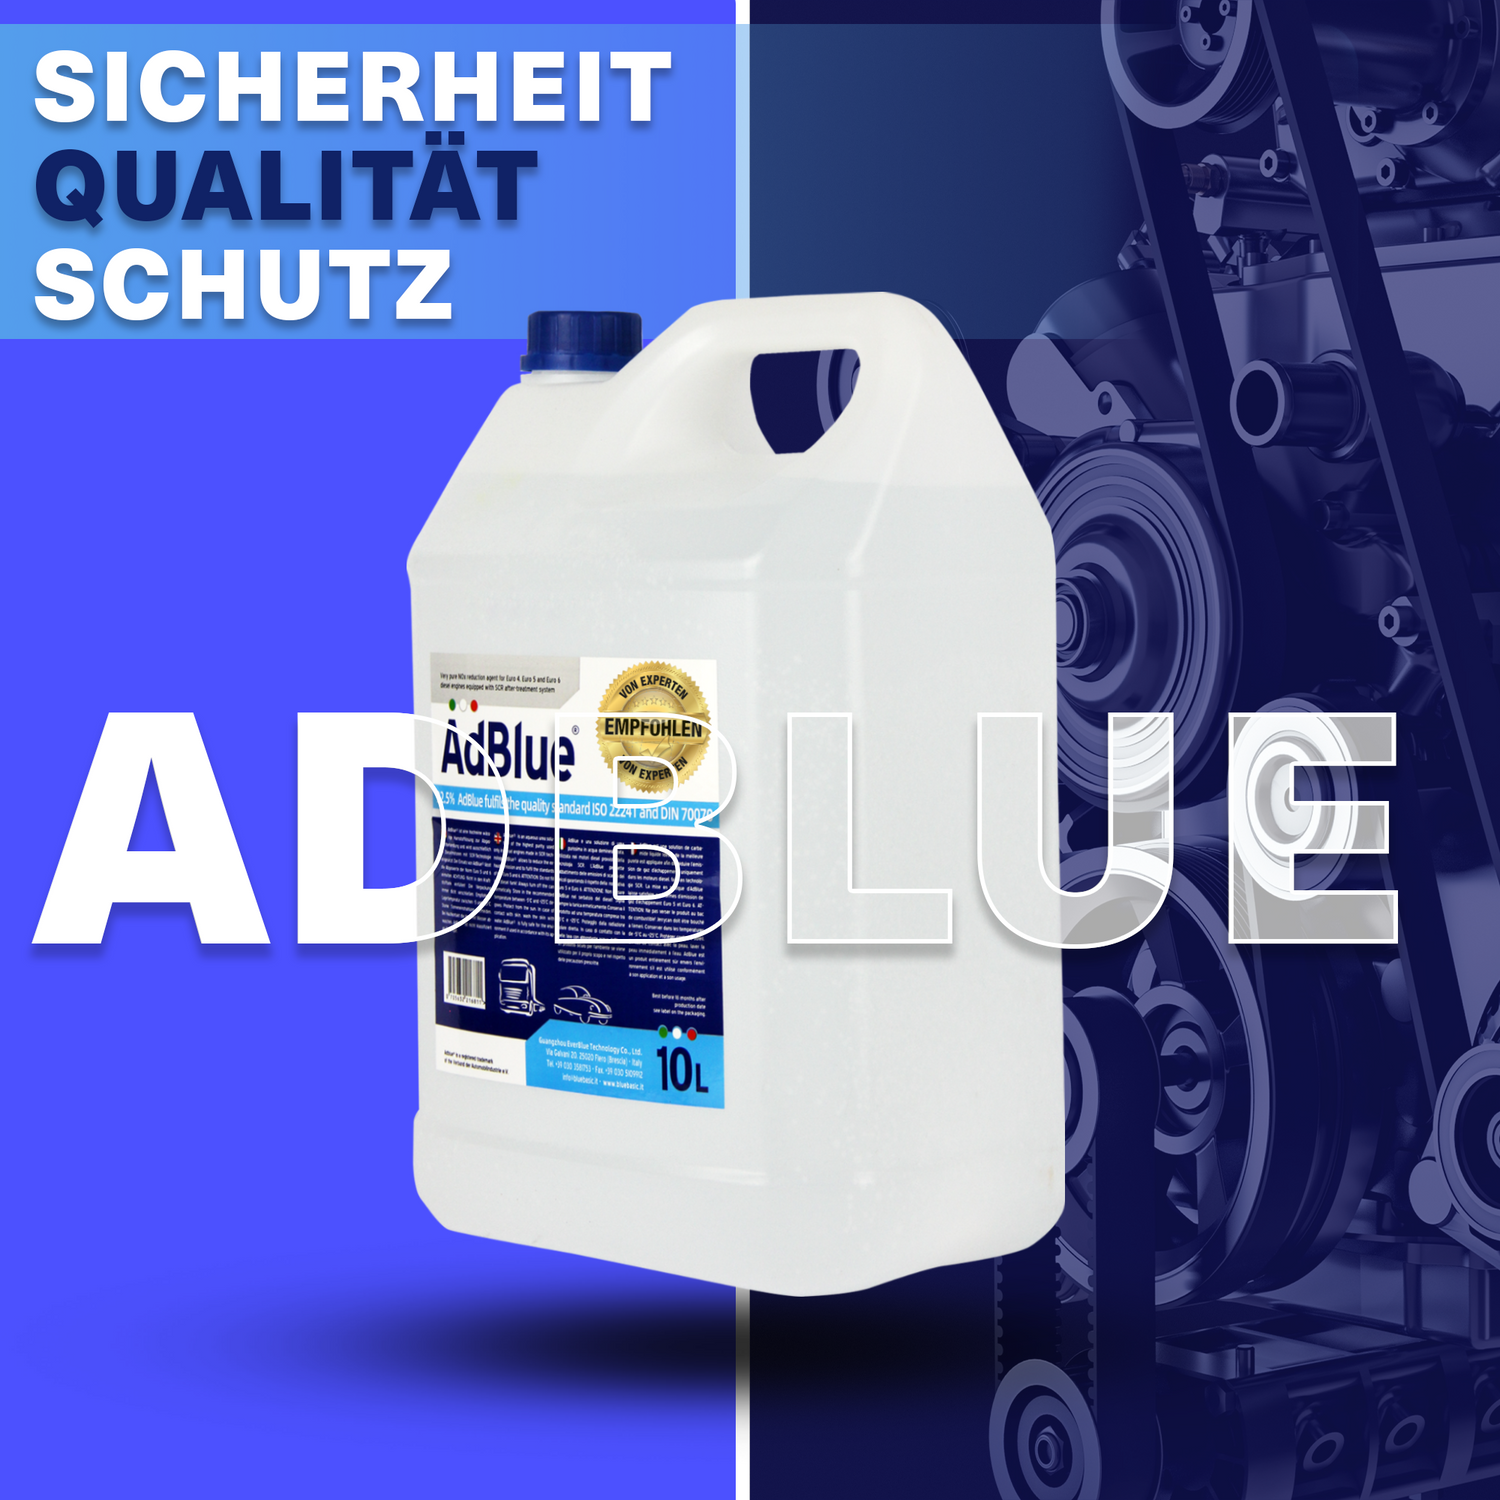 Hoyer AdBlue® Harnstofflösung - 10 Liter inkl. Ausgießer